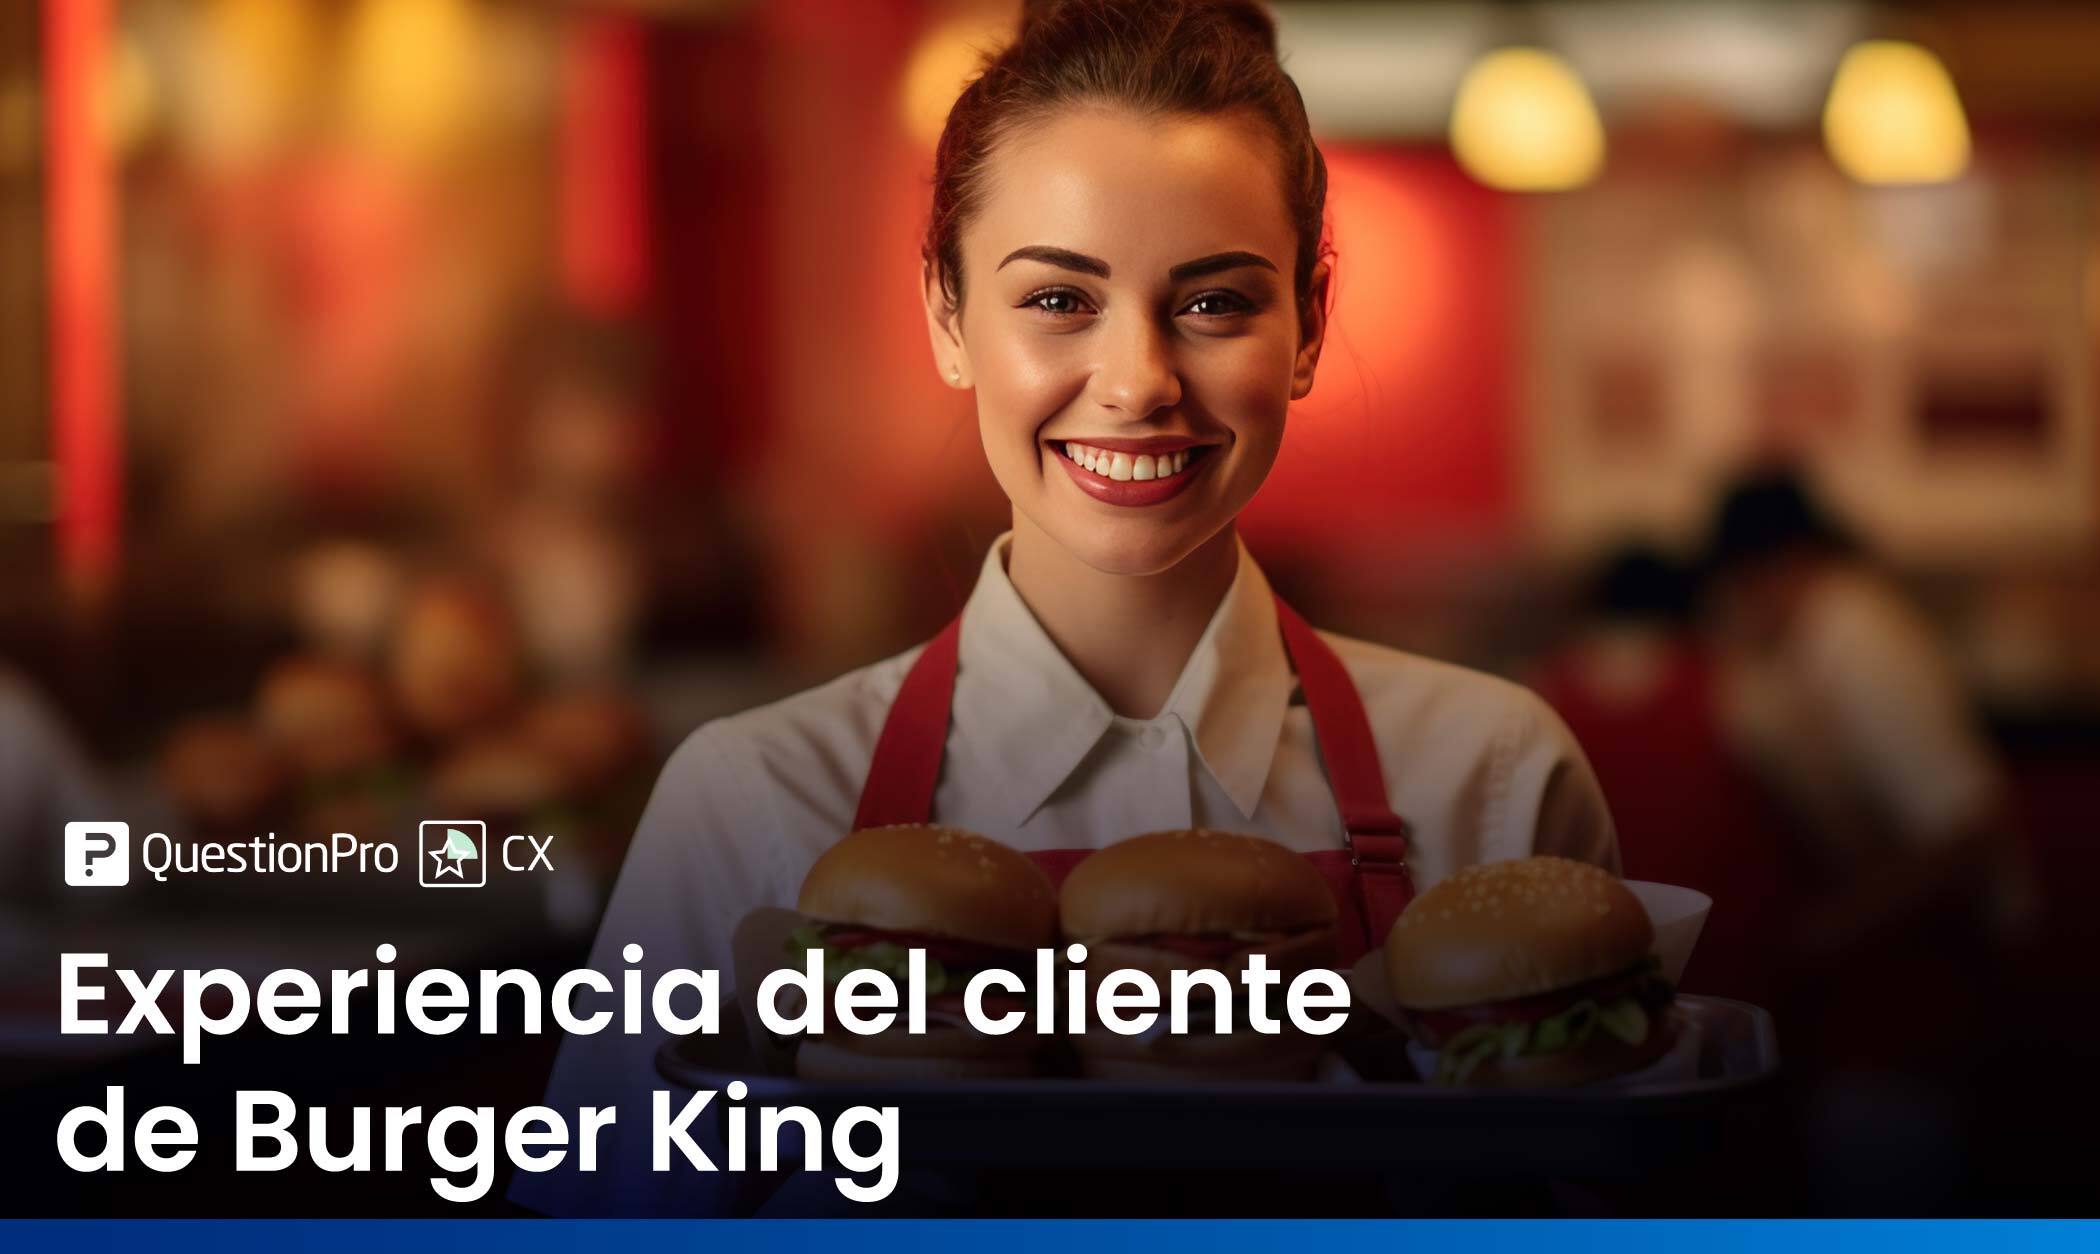 Experiencia del cliente de Burger King: Entendiendo su journey